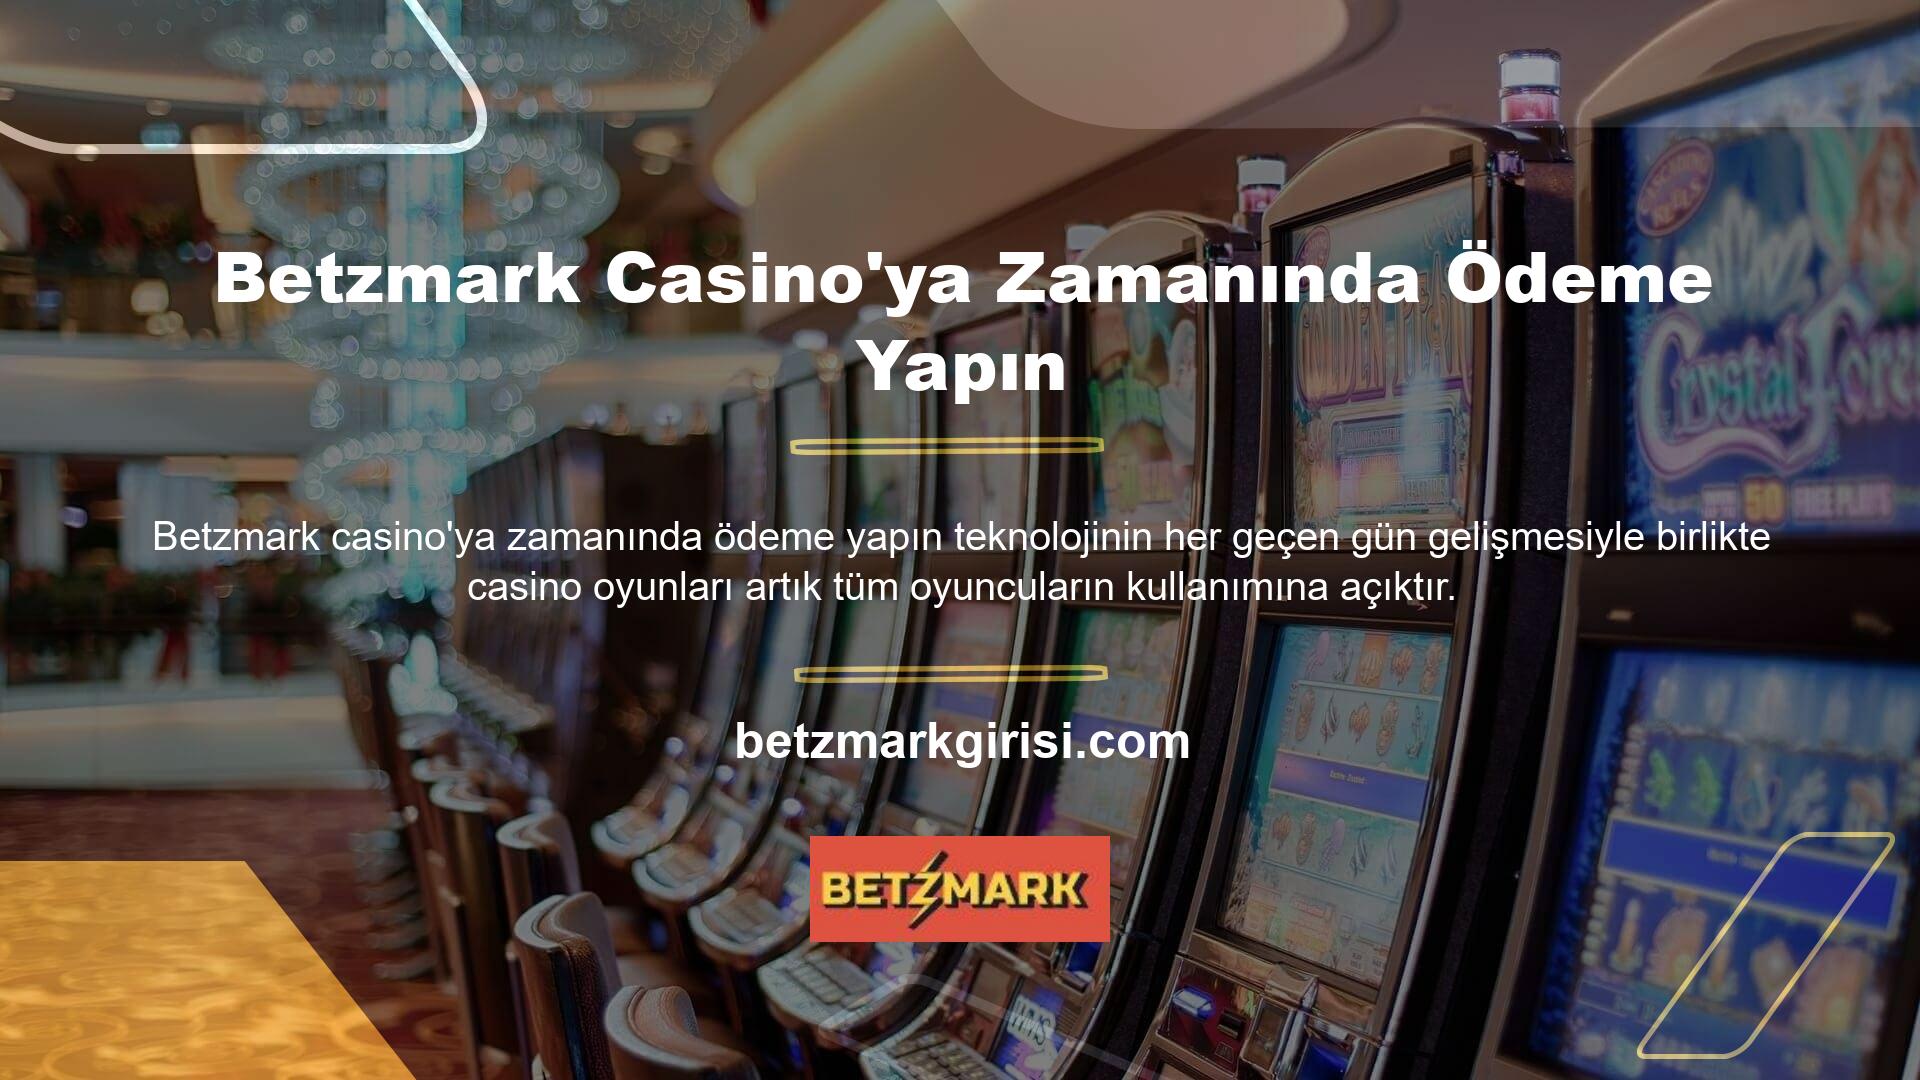 Betzmark casino oyunları evde, okulda, işte, tatilde ve seyahatte oynanabilmektedir